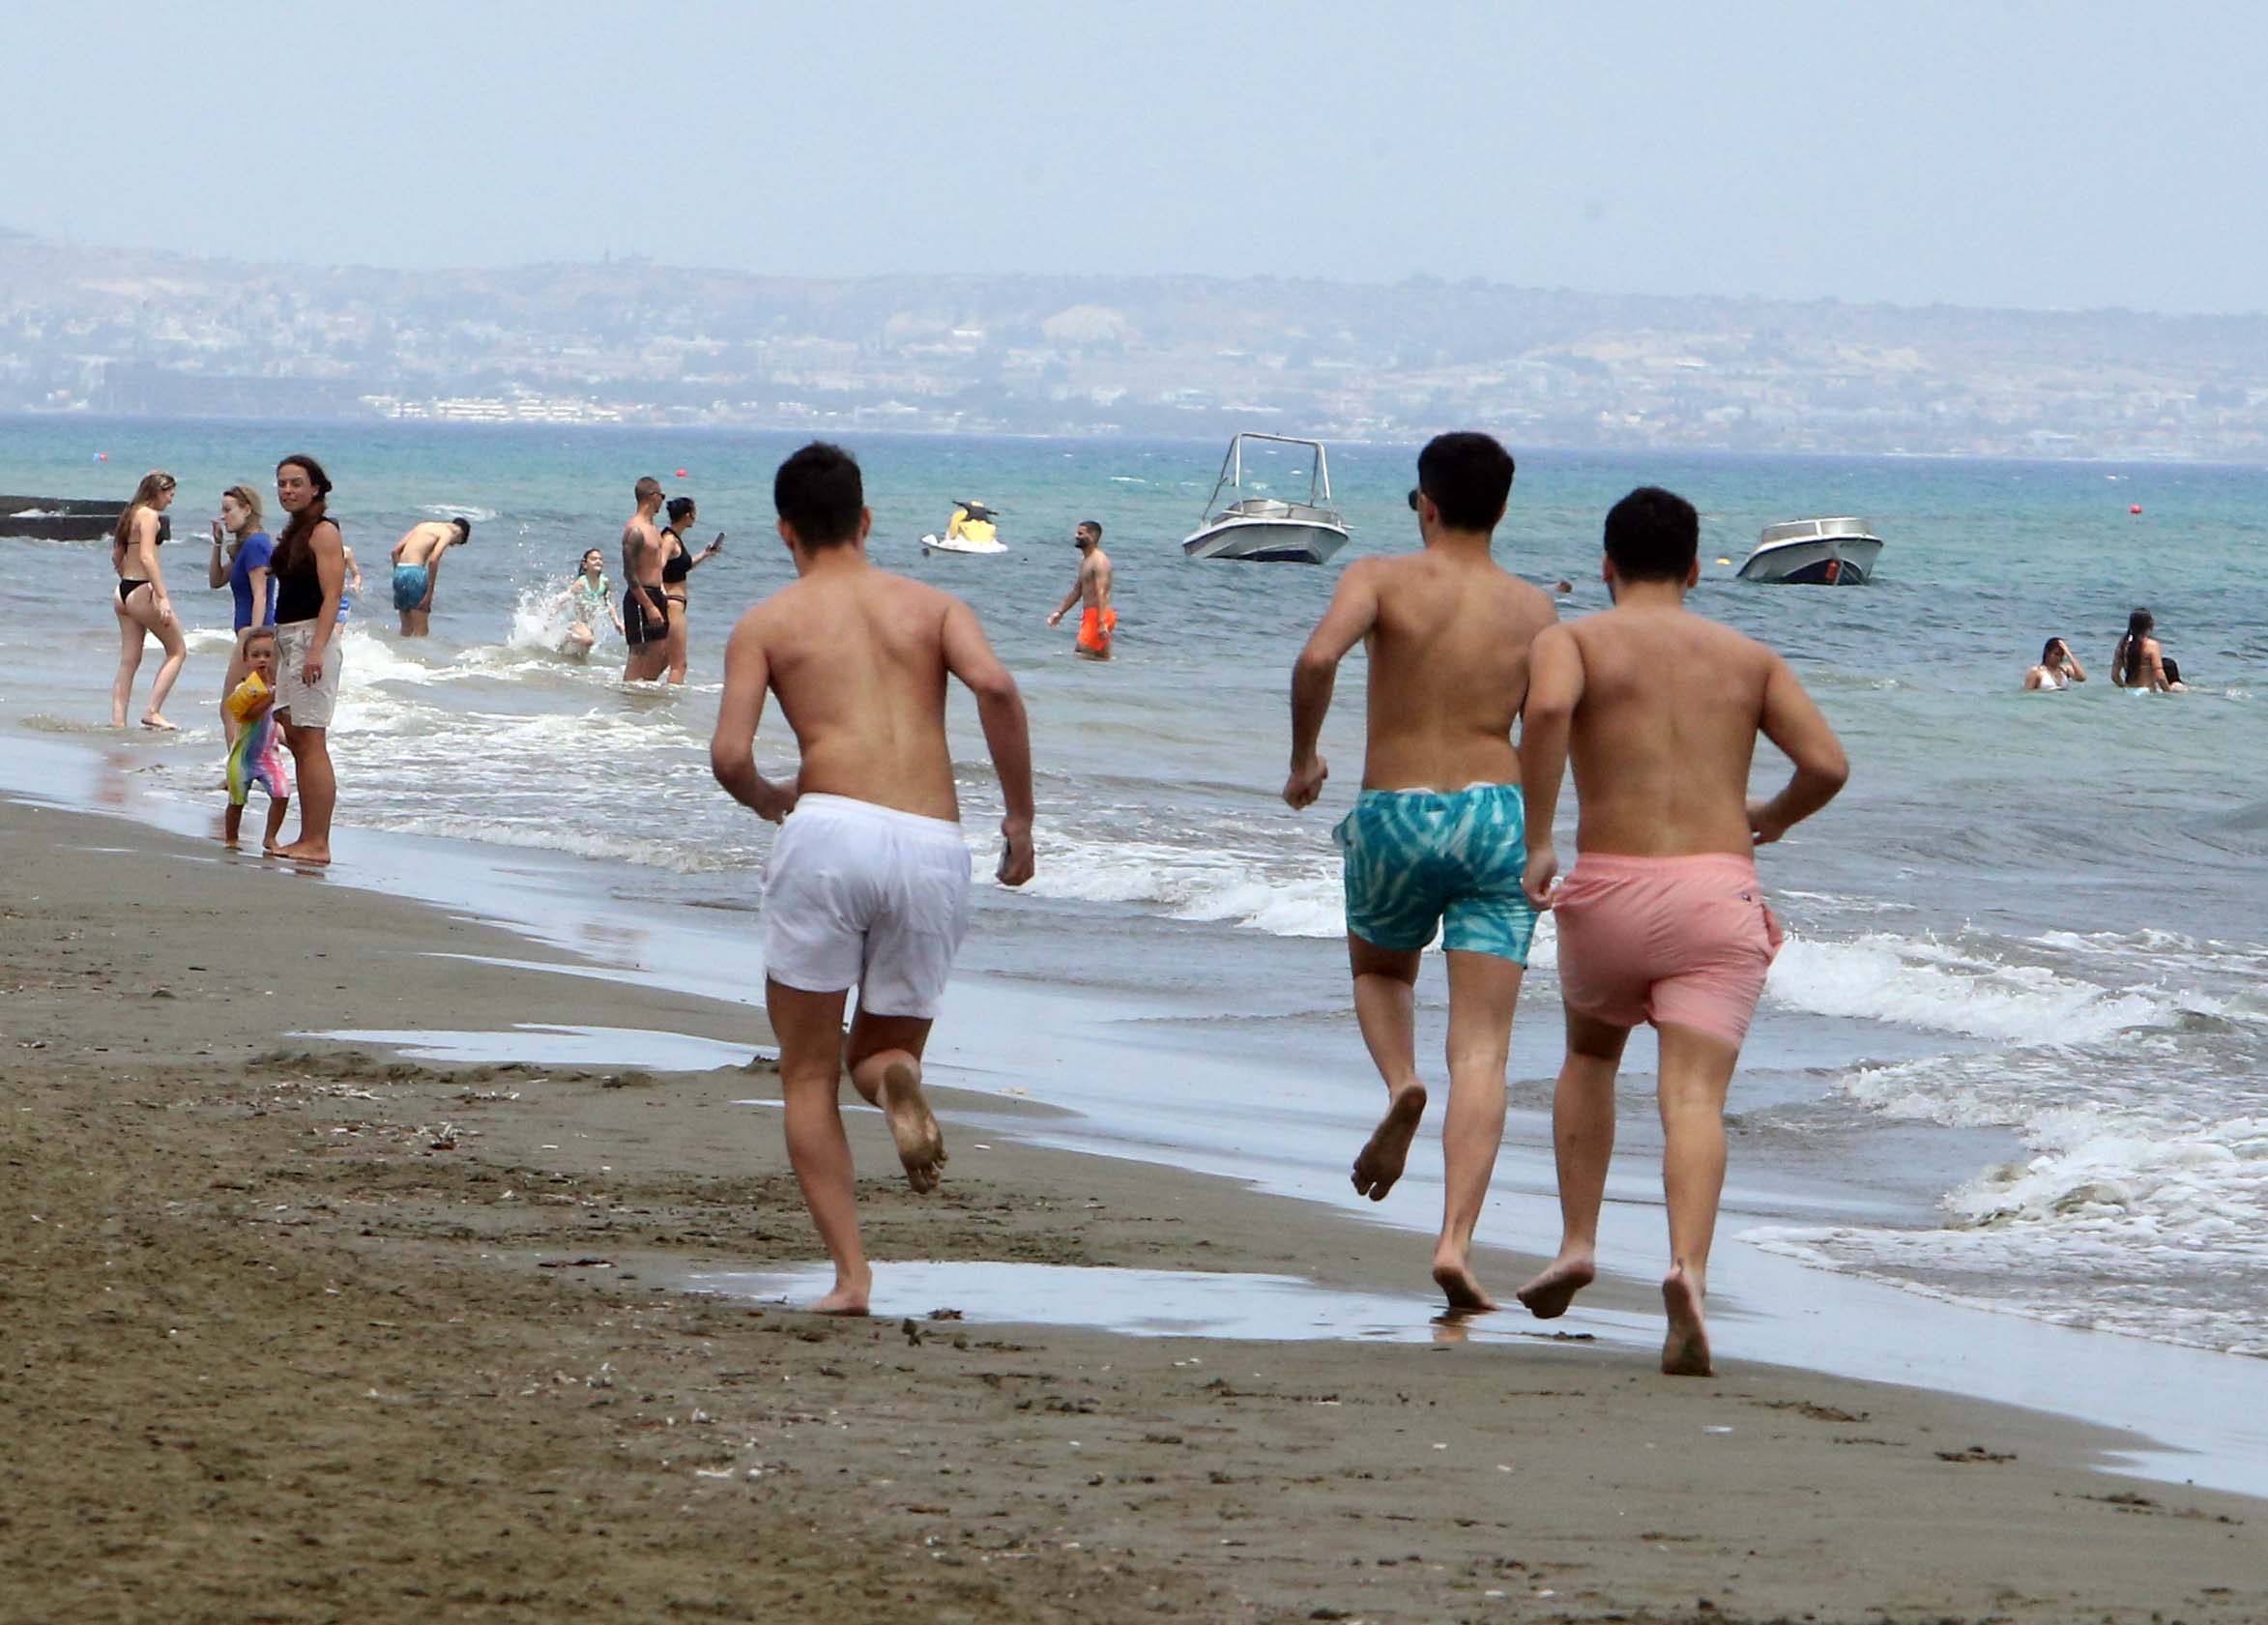 Cyprus has best quality bathing waters in Europe (update)